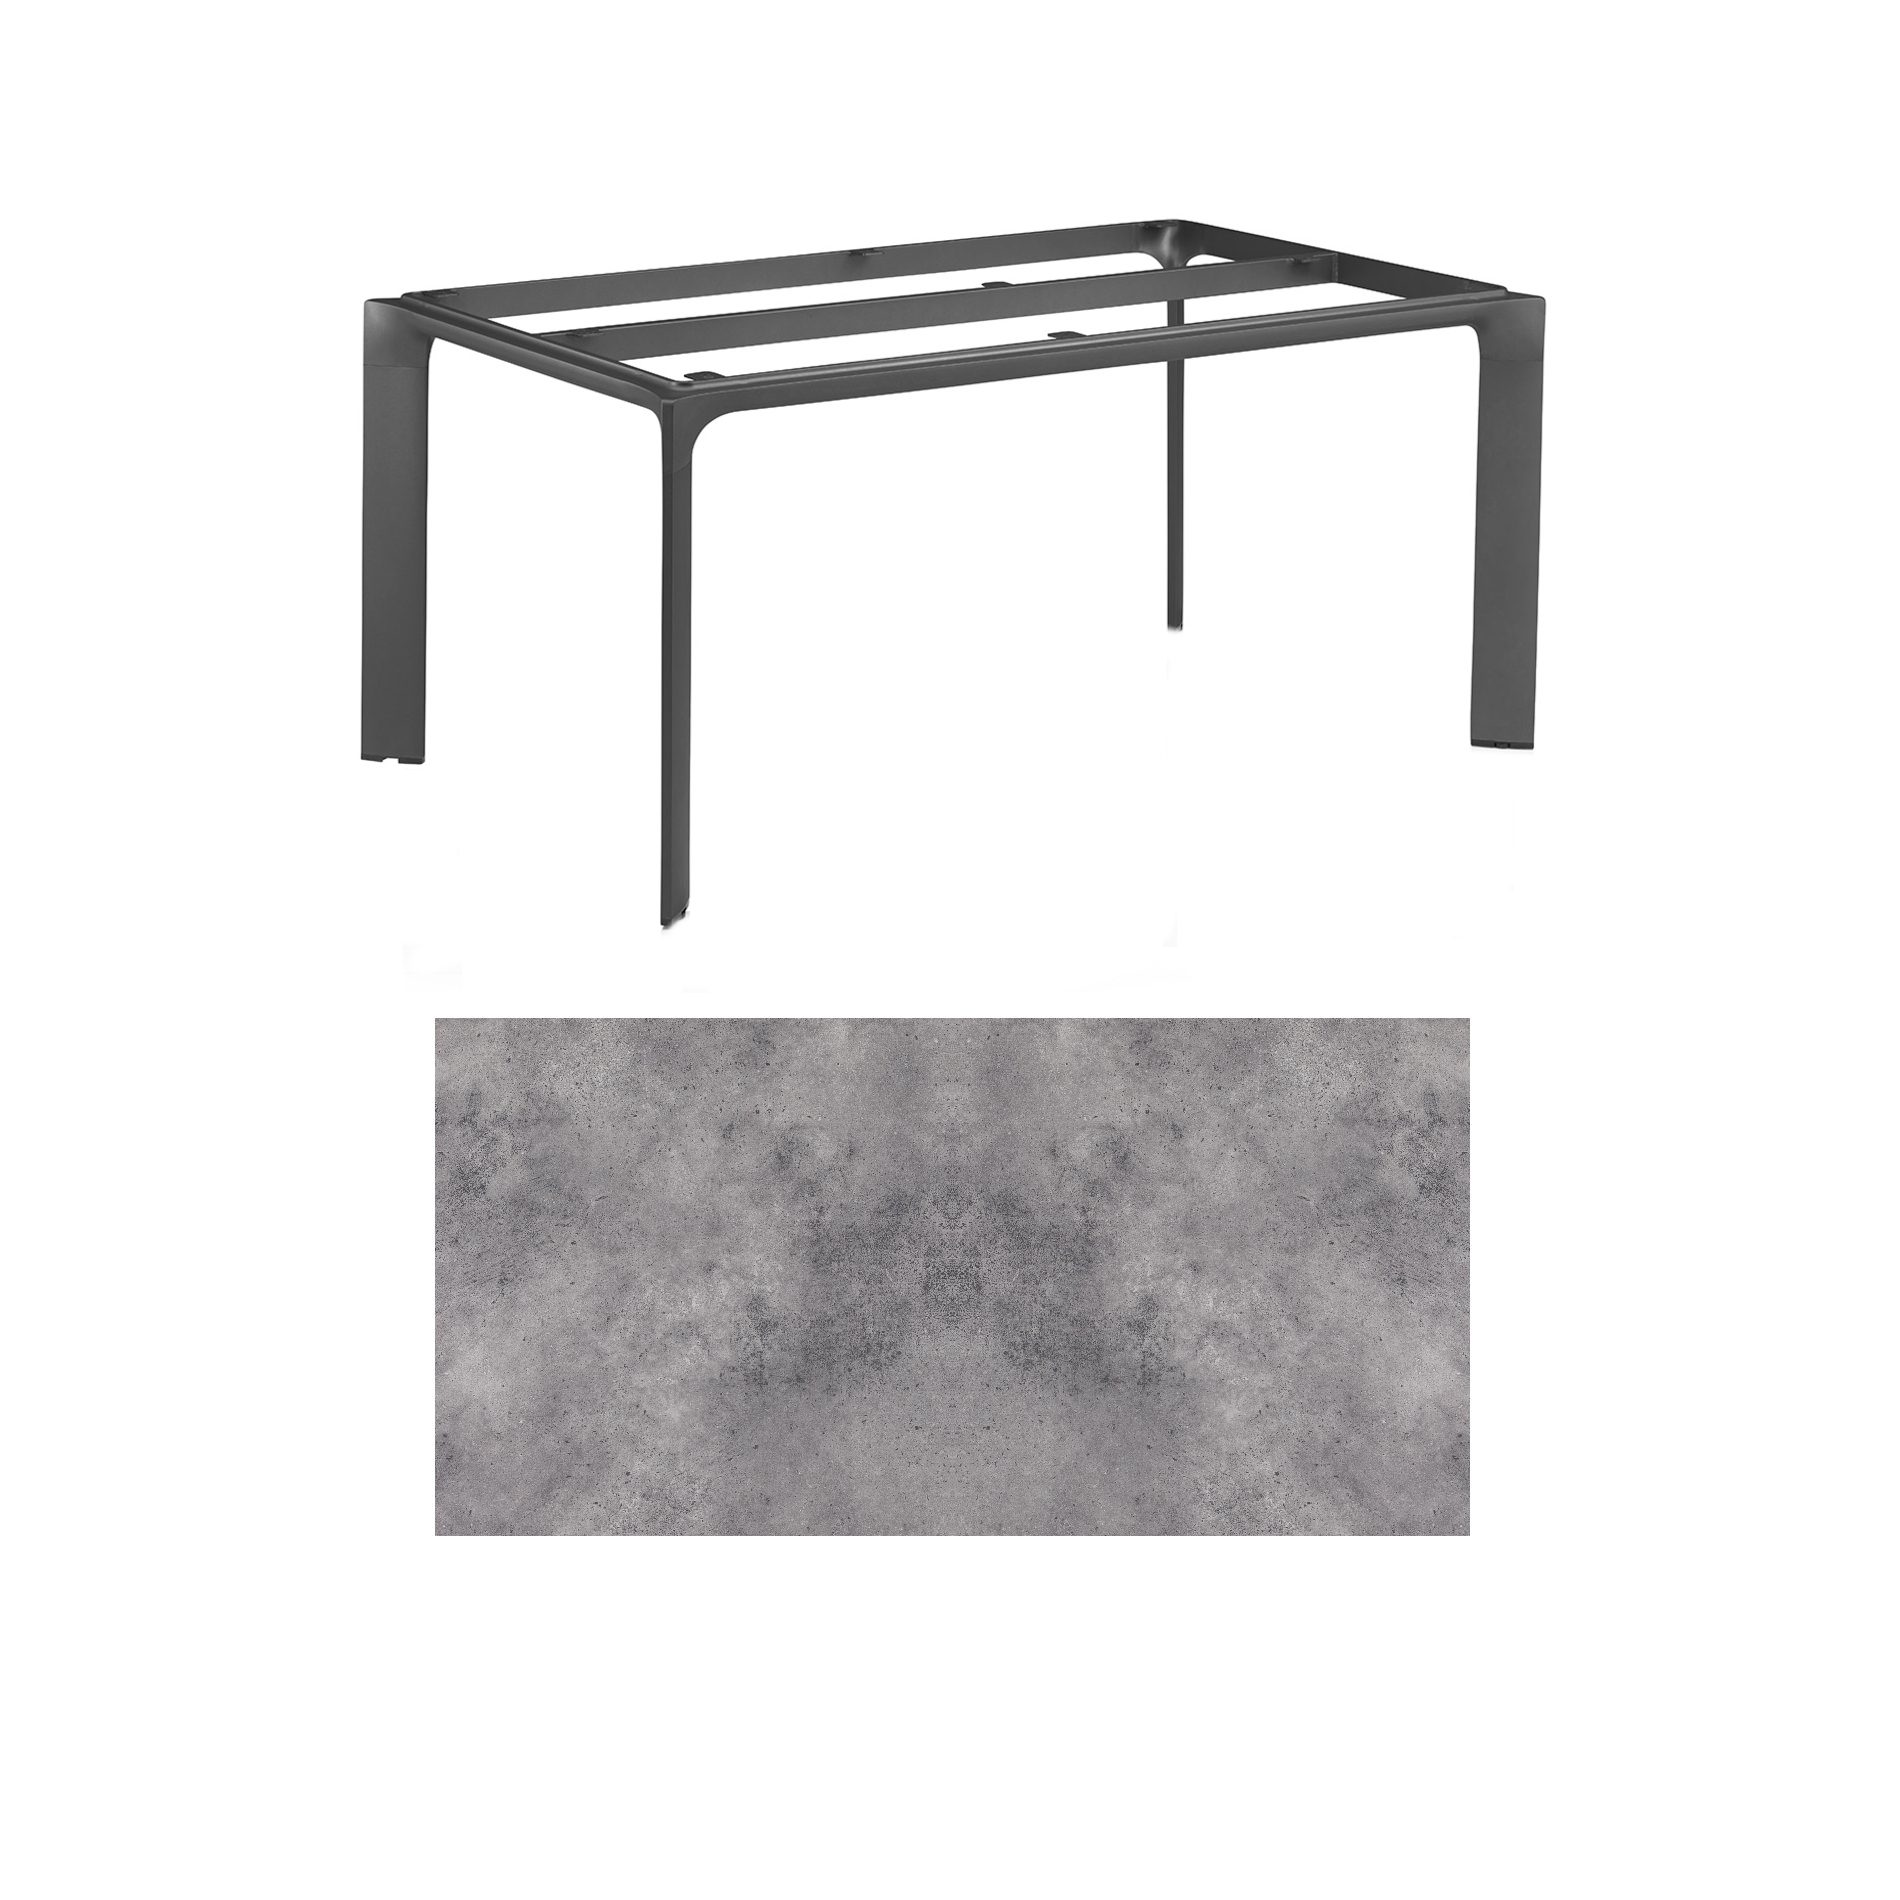 Kettler "Diamond" Tischsystem Gartentisch, Gestell Aluminium anthrazit, Tischplatte HPL anthrazit, 180x95 cm